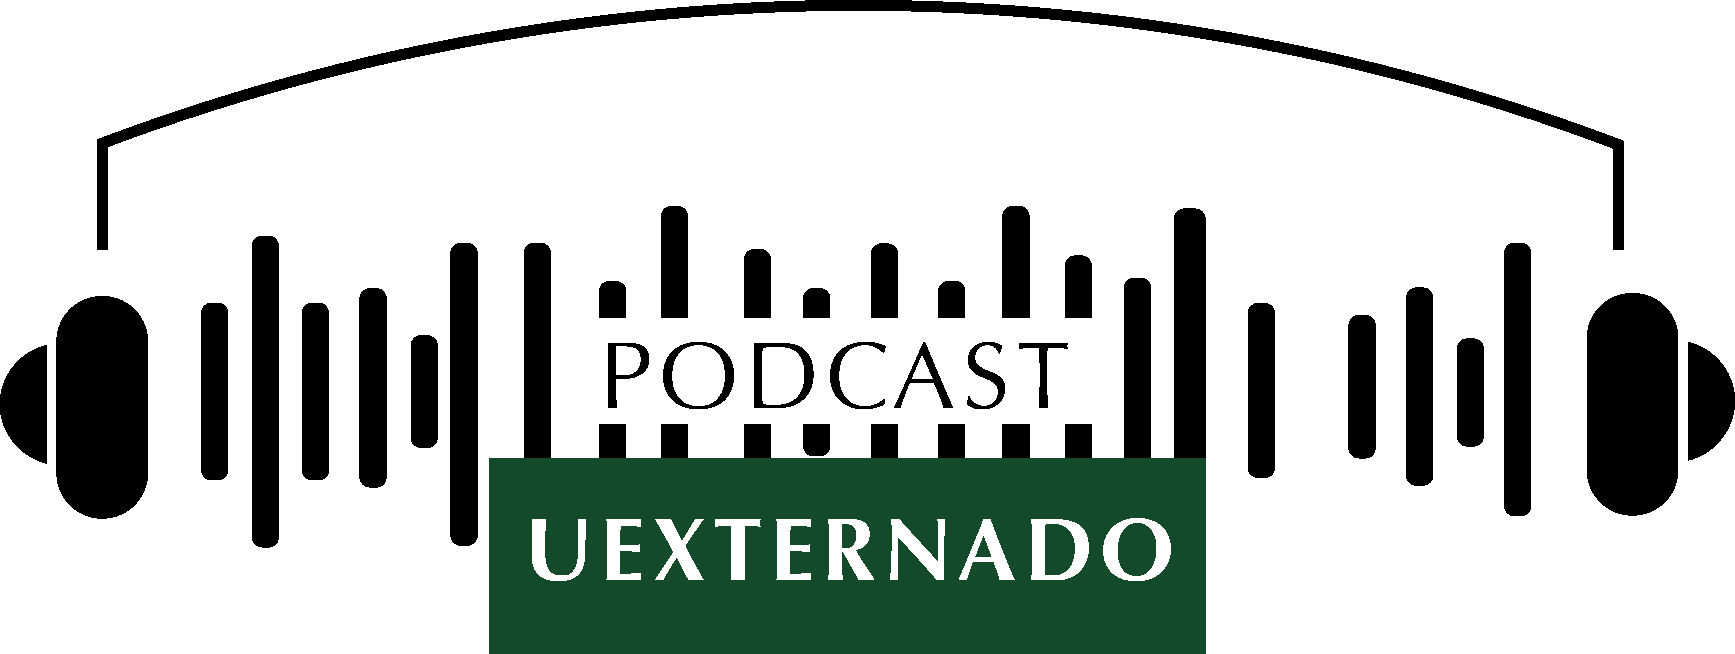 Externado Podcast